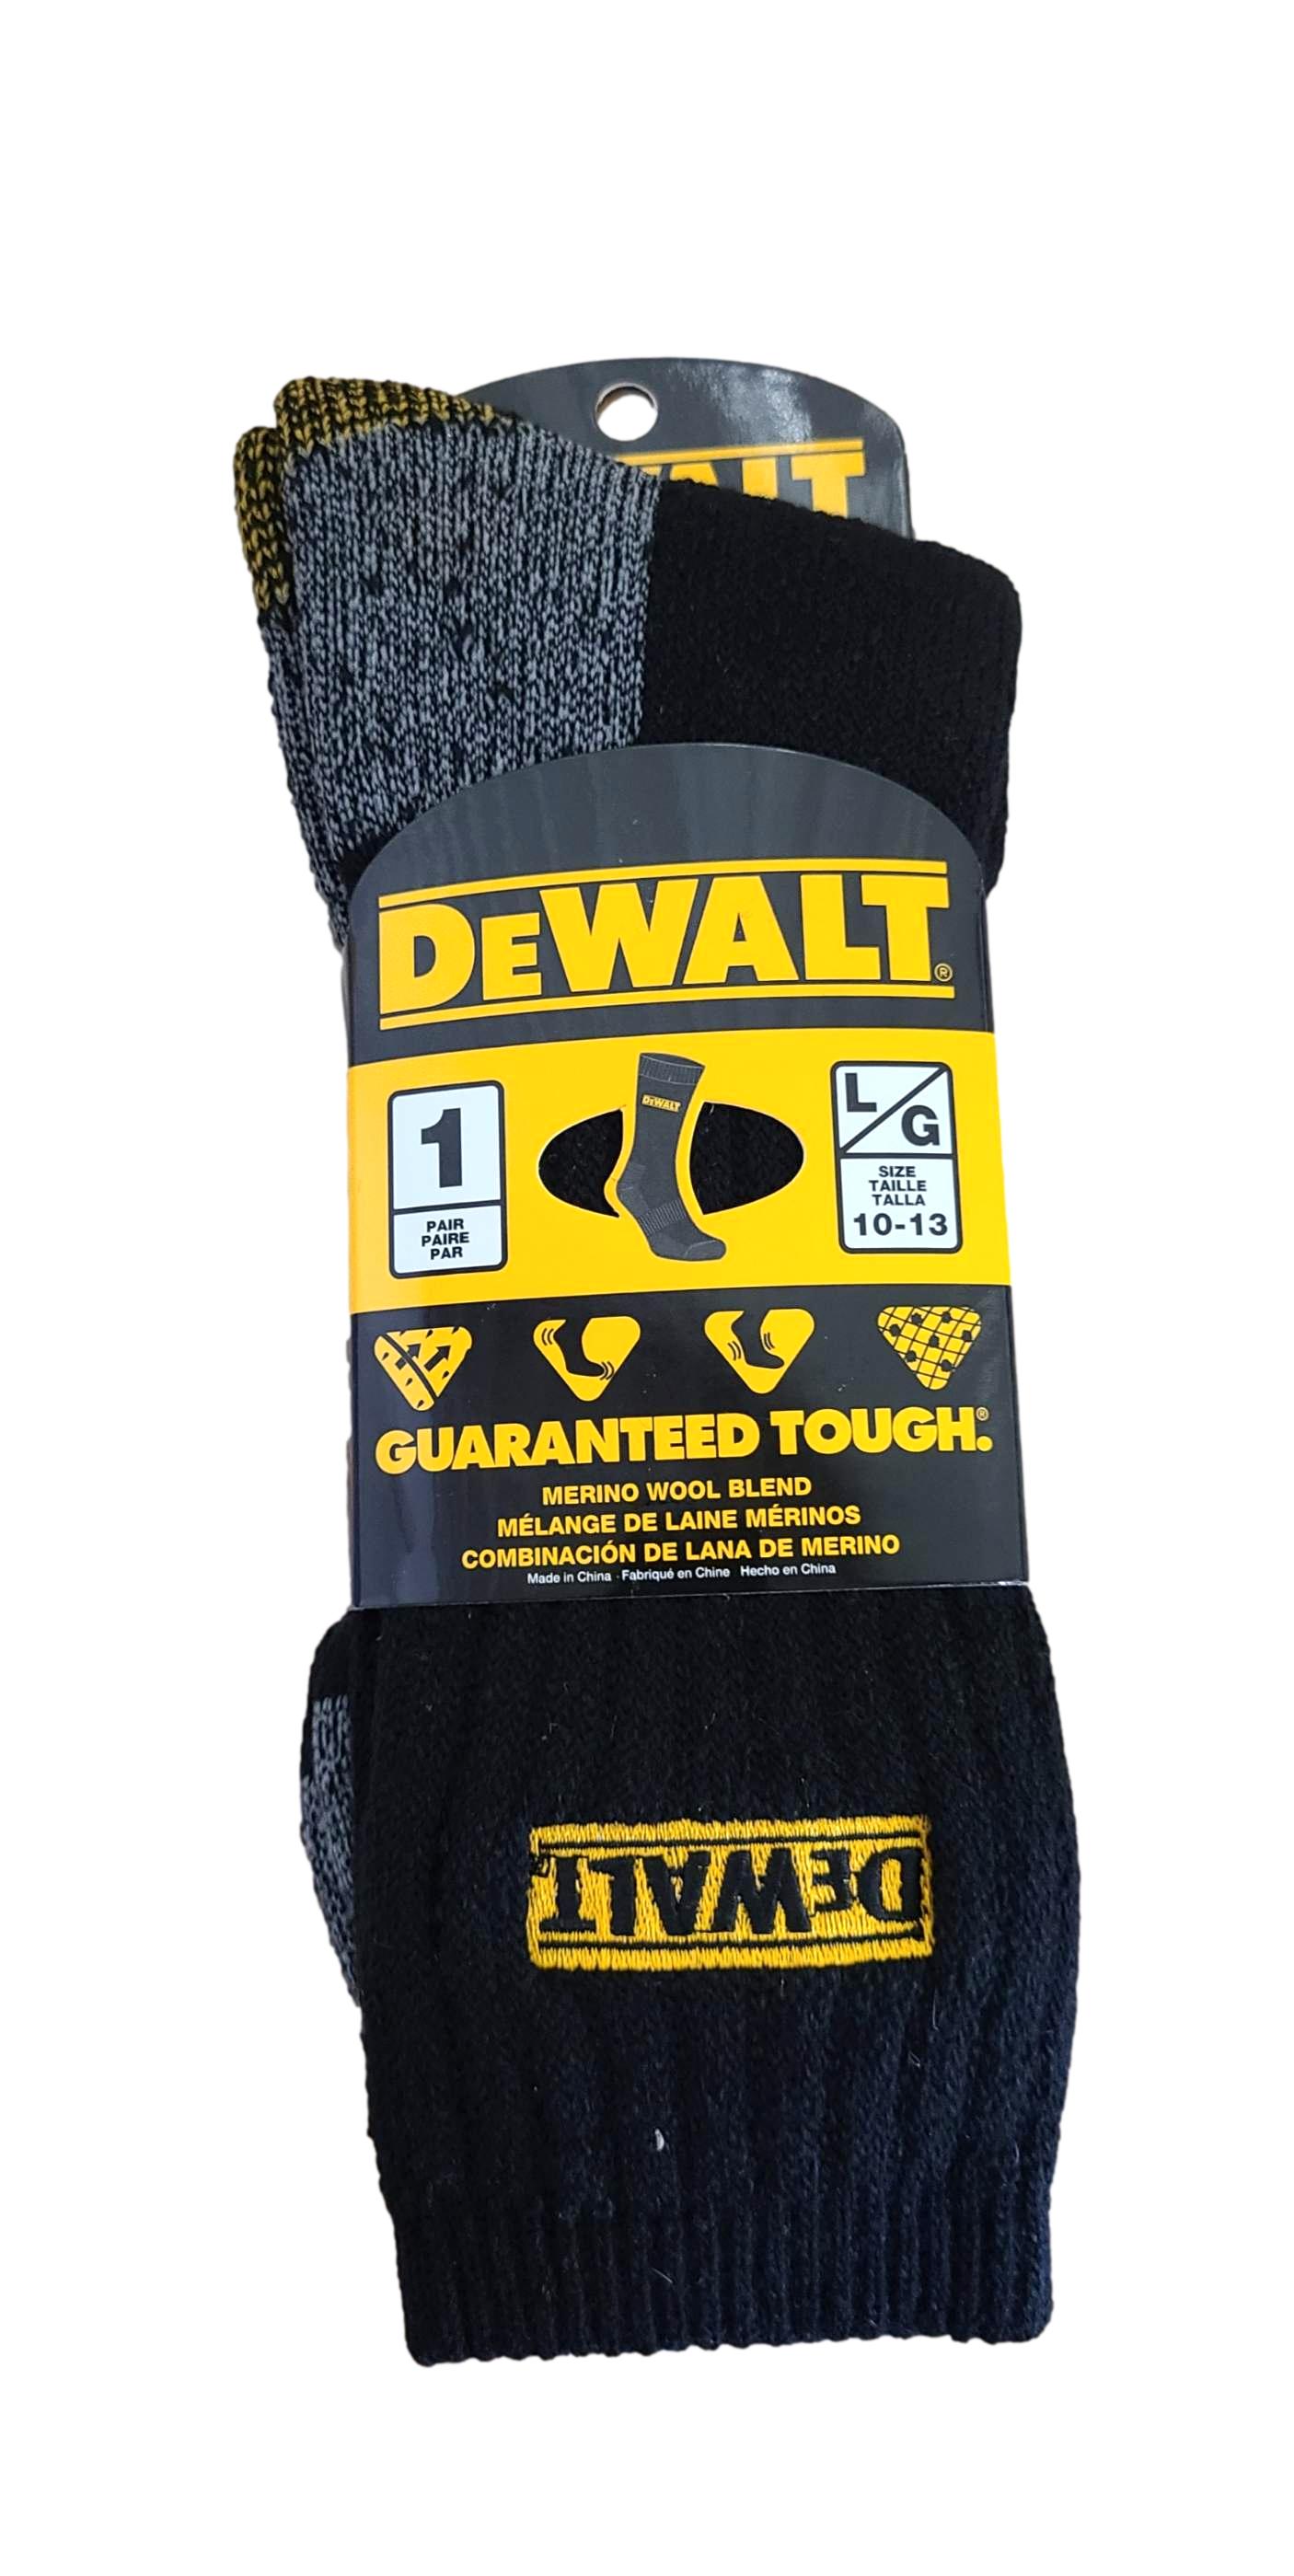 DeWALT Merino Wool Blend Sock - Pair Size 10-13